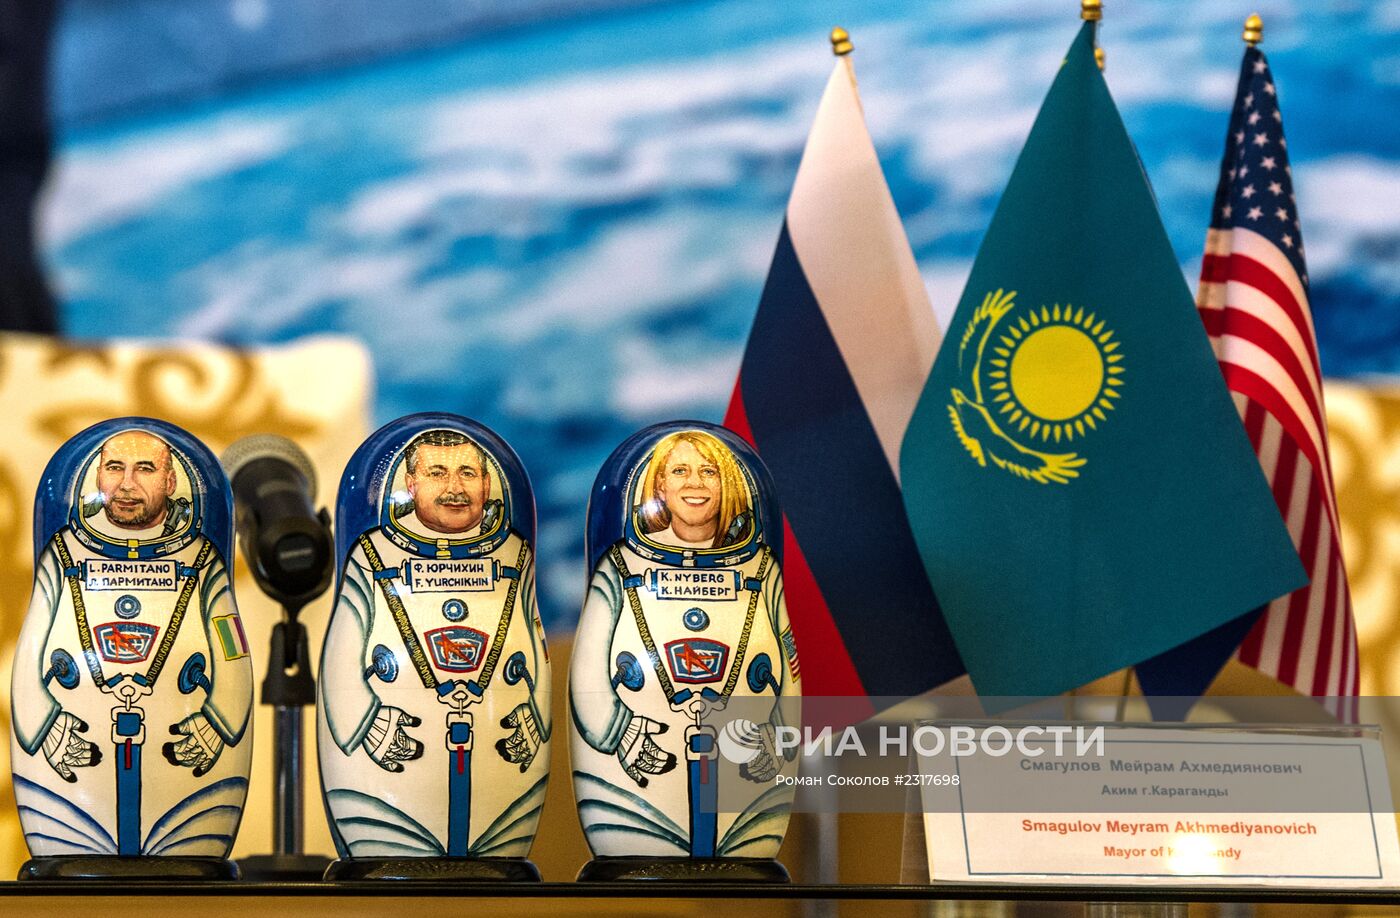 Пресс-конференция экипажа корабля "Союз ТМА-09М"